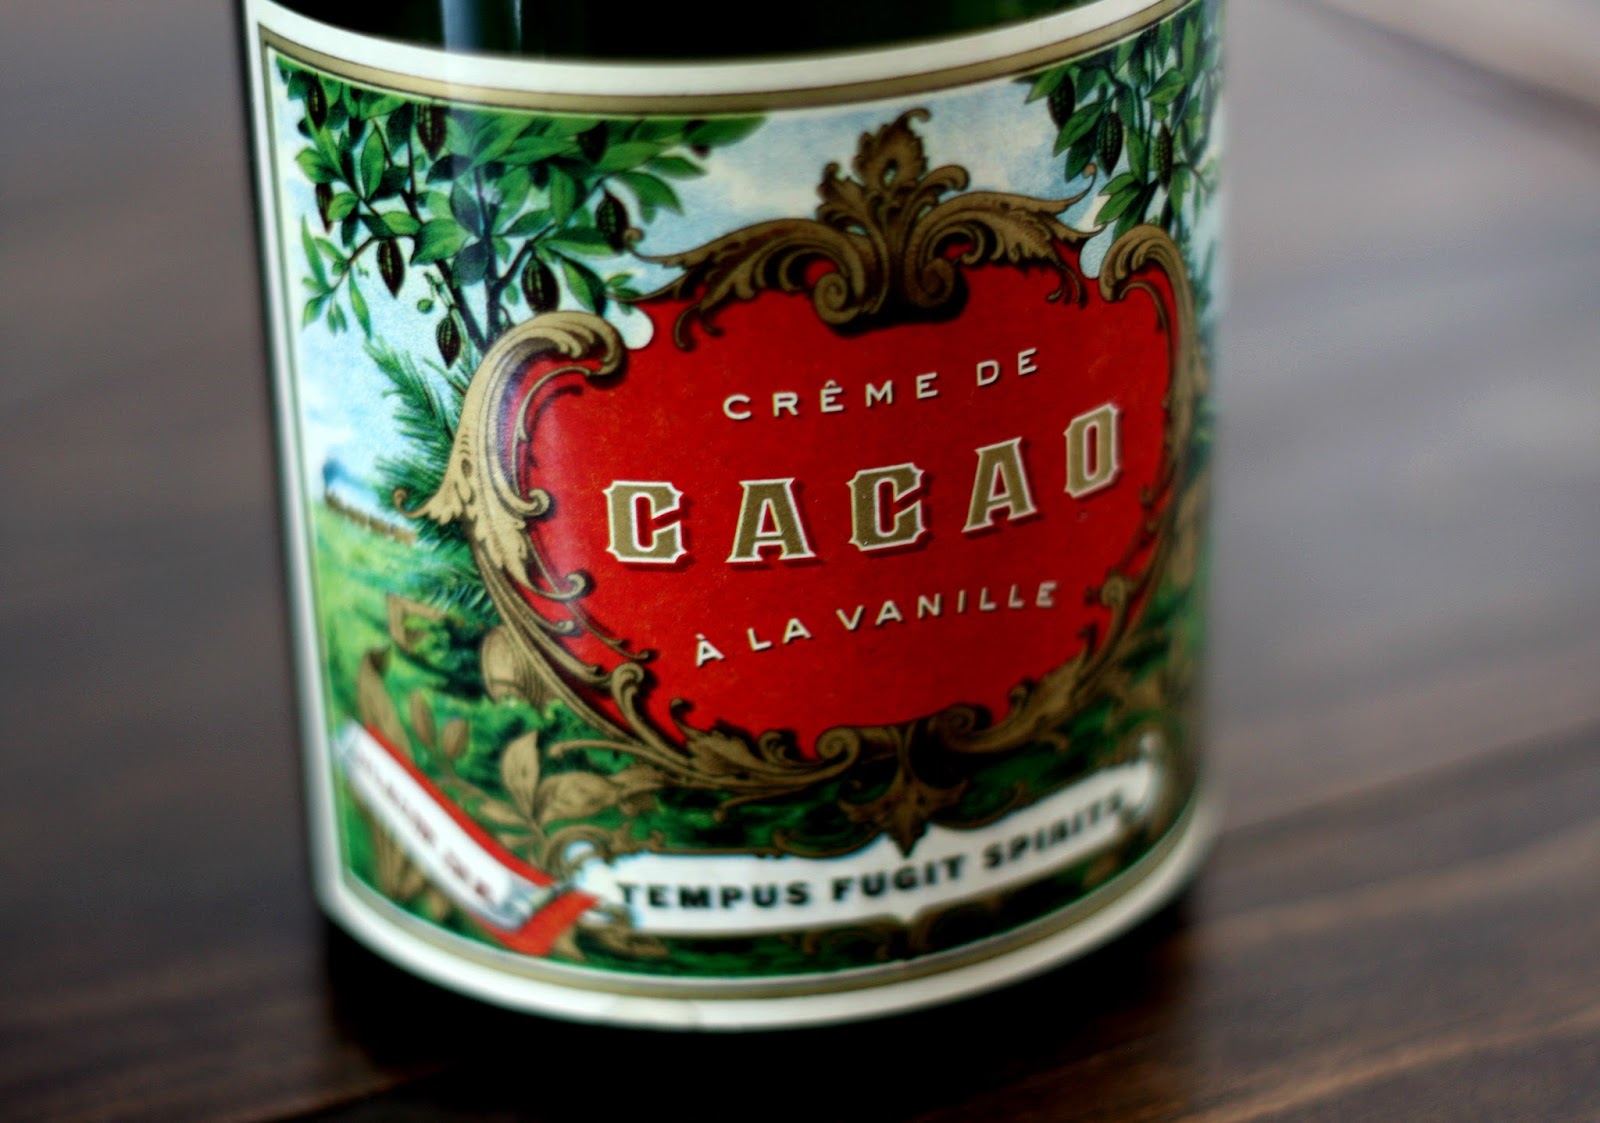 Bottle Buy: Crème de Cacao